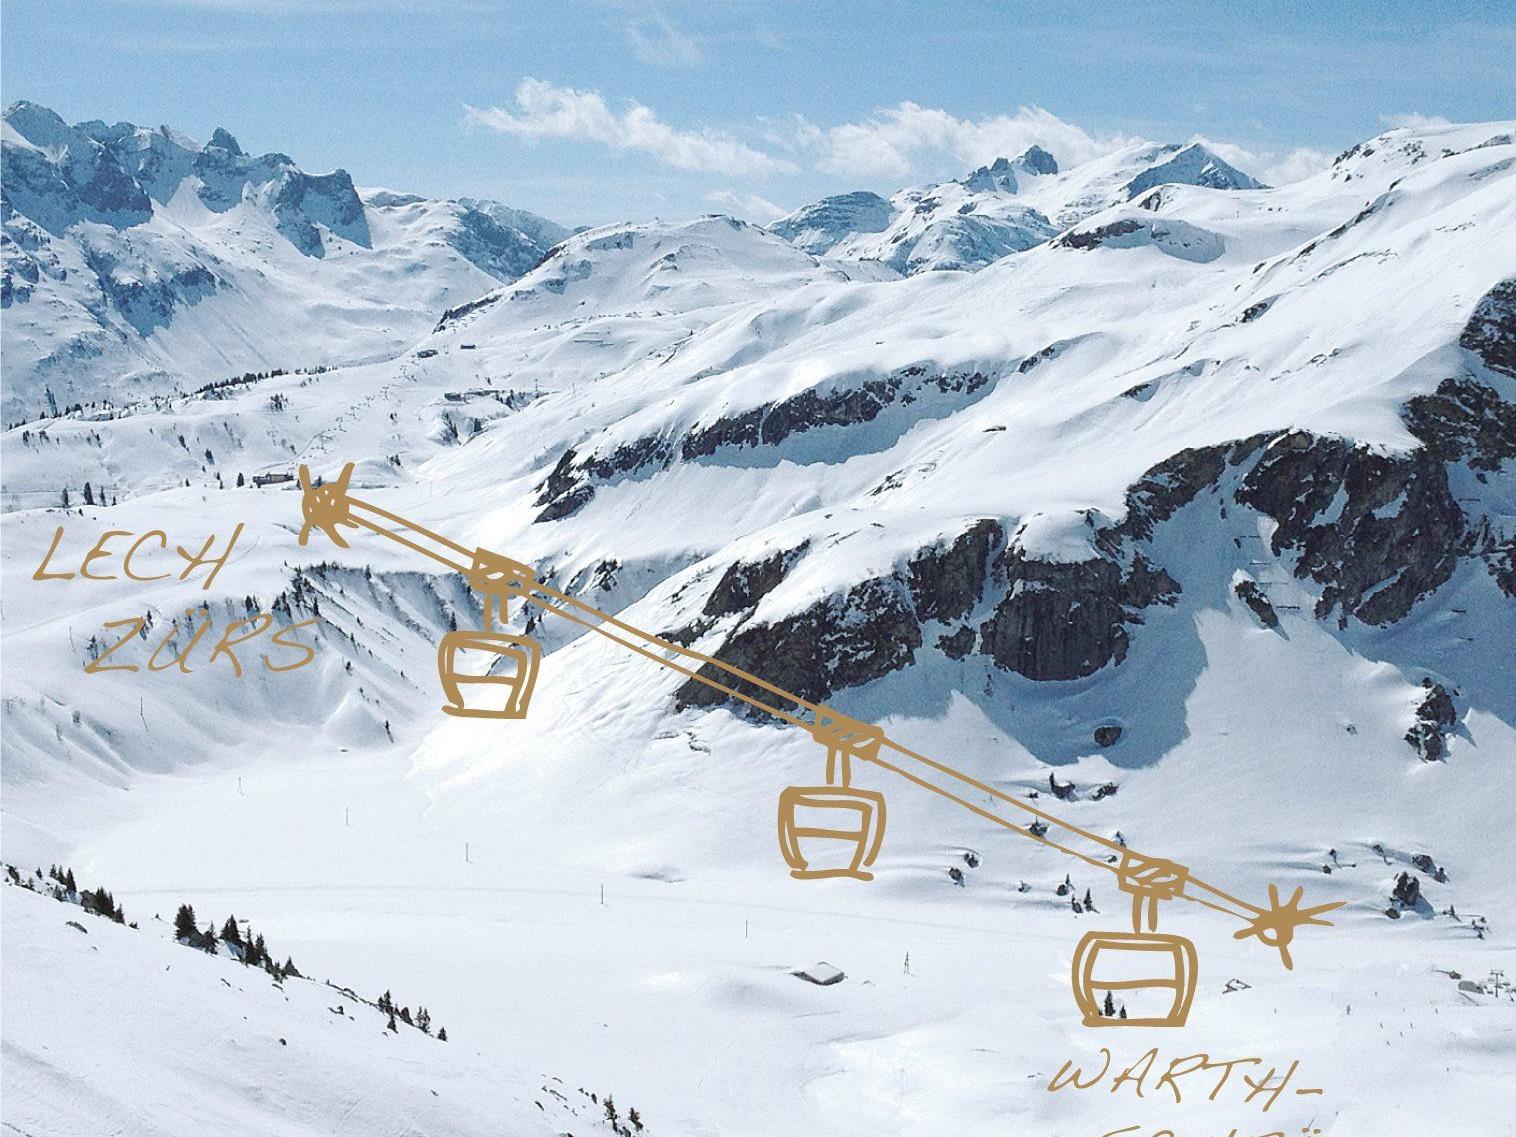 Der Auenfeldjet verbindet ab Dezember 2013 die Skigebiete von Lech und Warth.